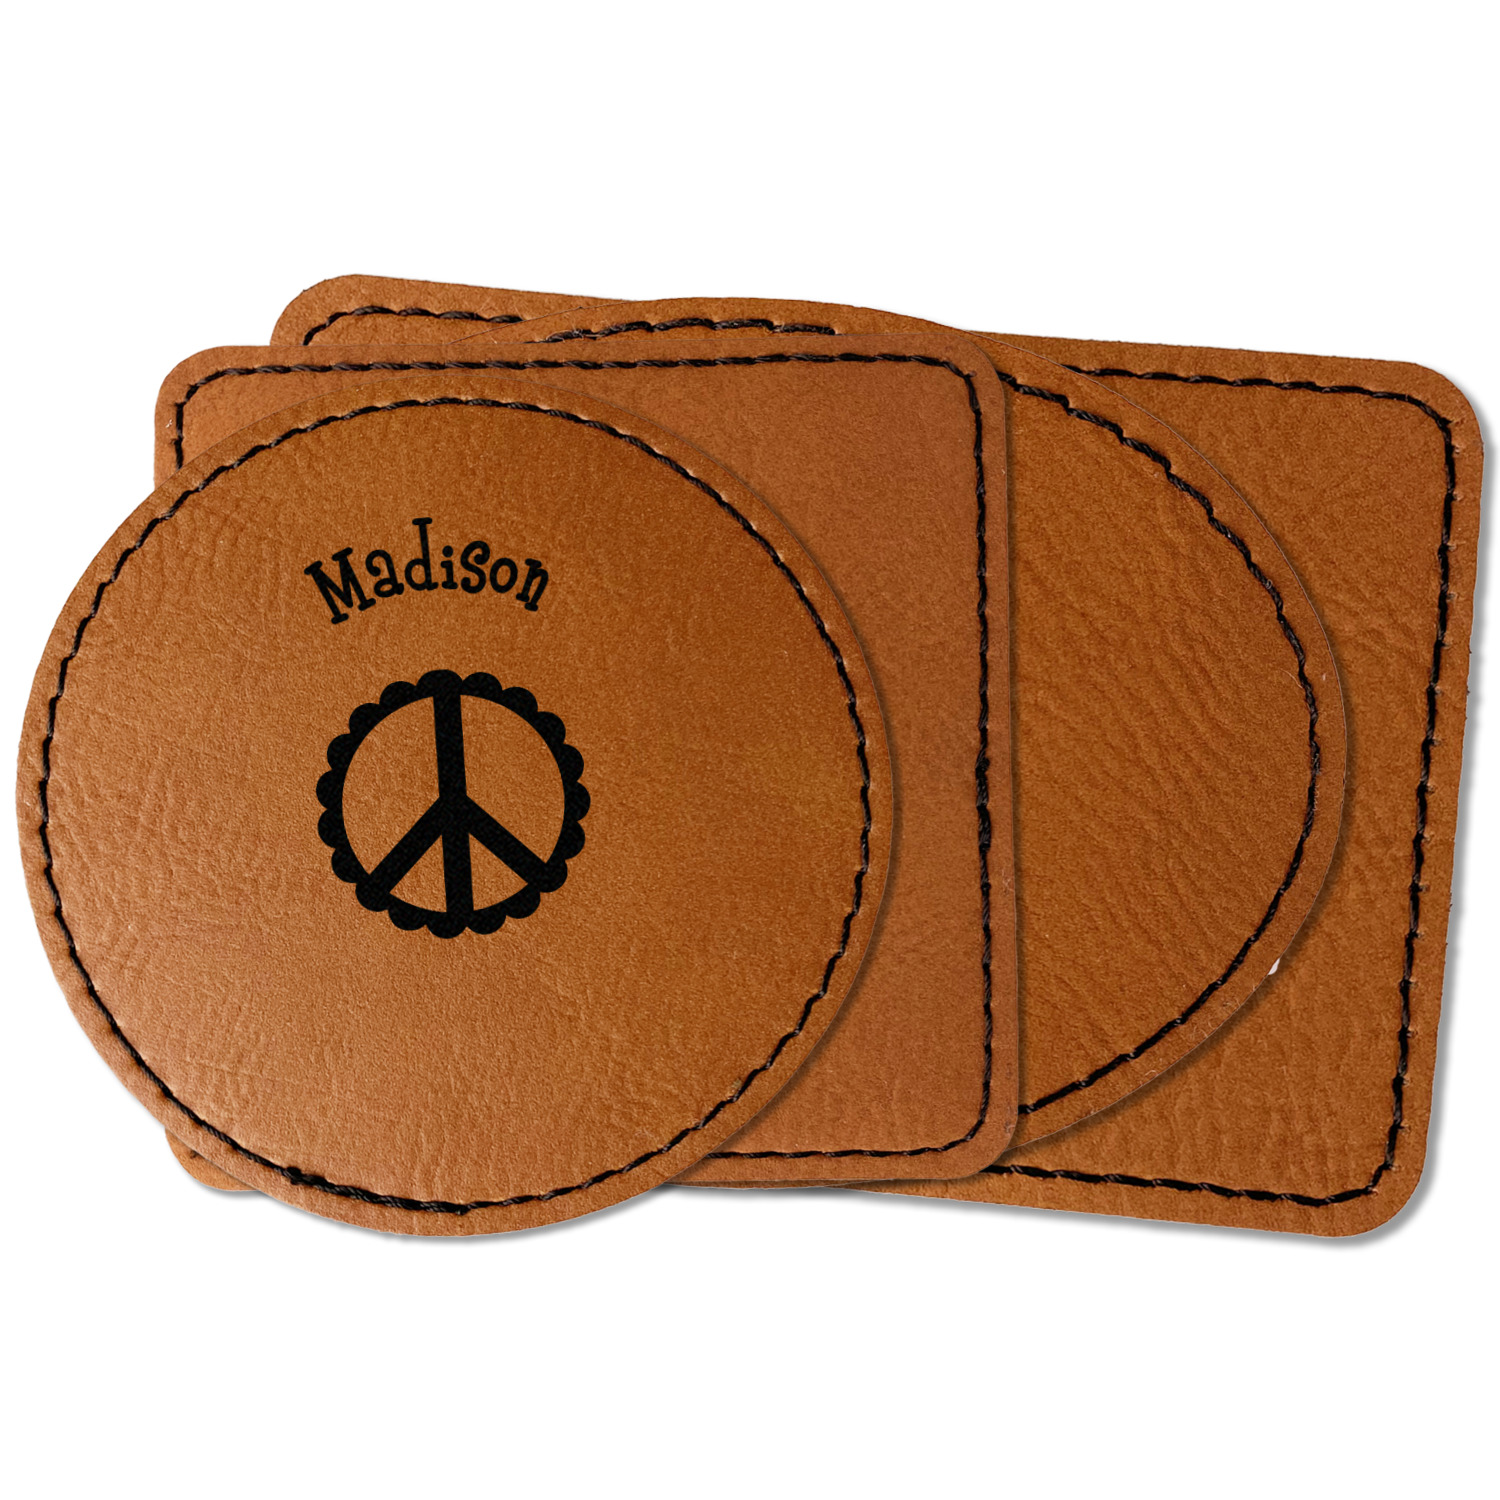 Multicolor Patch Real Leather Shoulder Bag Tote Handbag Purse Crossbody 2  Handle | eBay